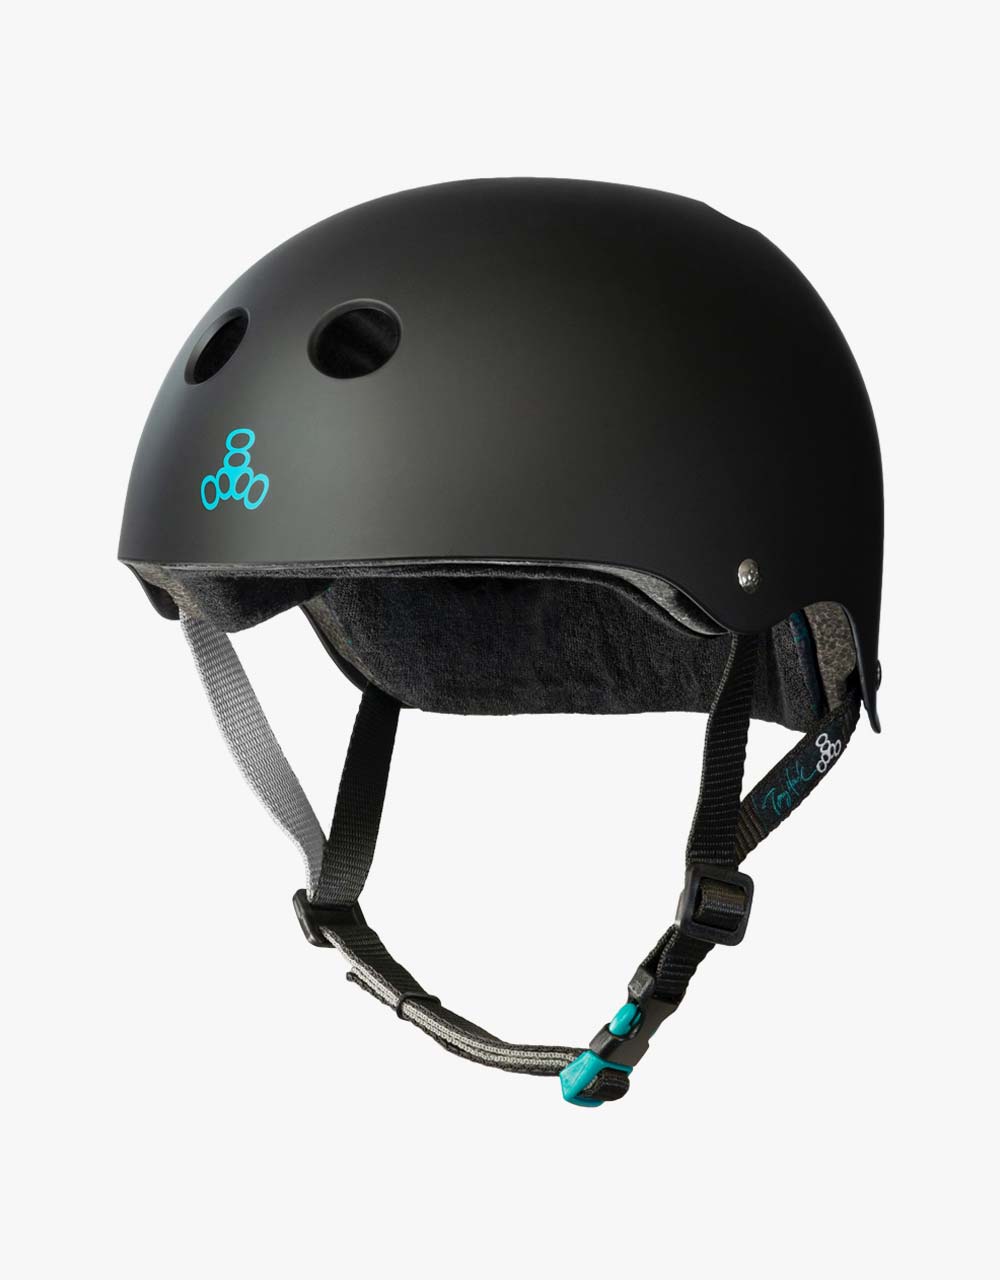 Triple 8 Sweatsaver Certified Tony Hawk Pro Rubber Helmet - Black